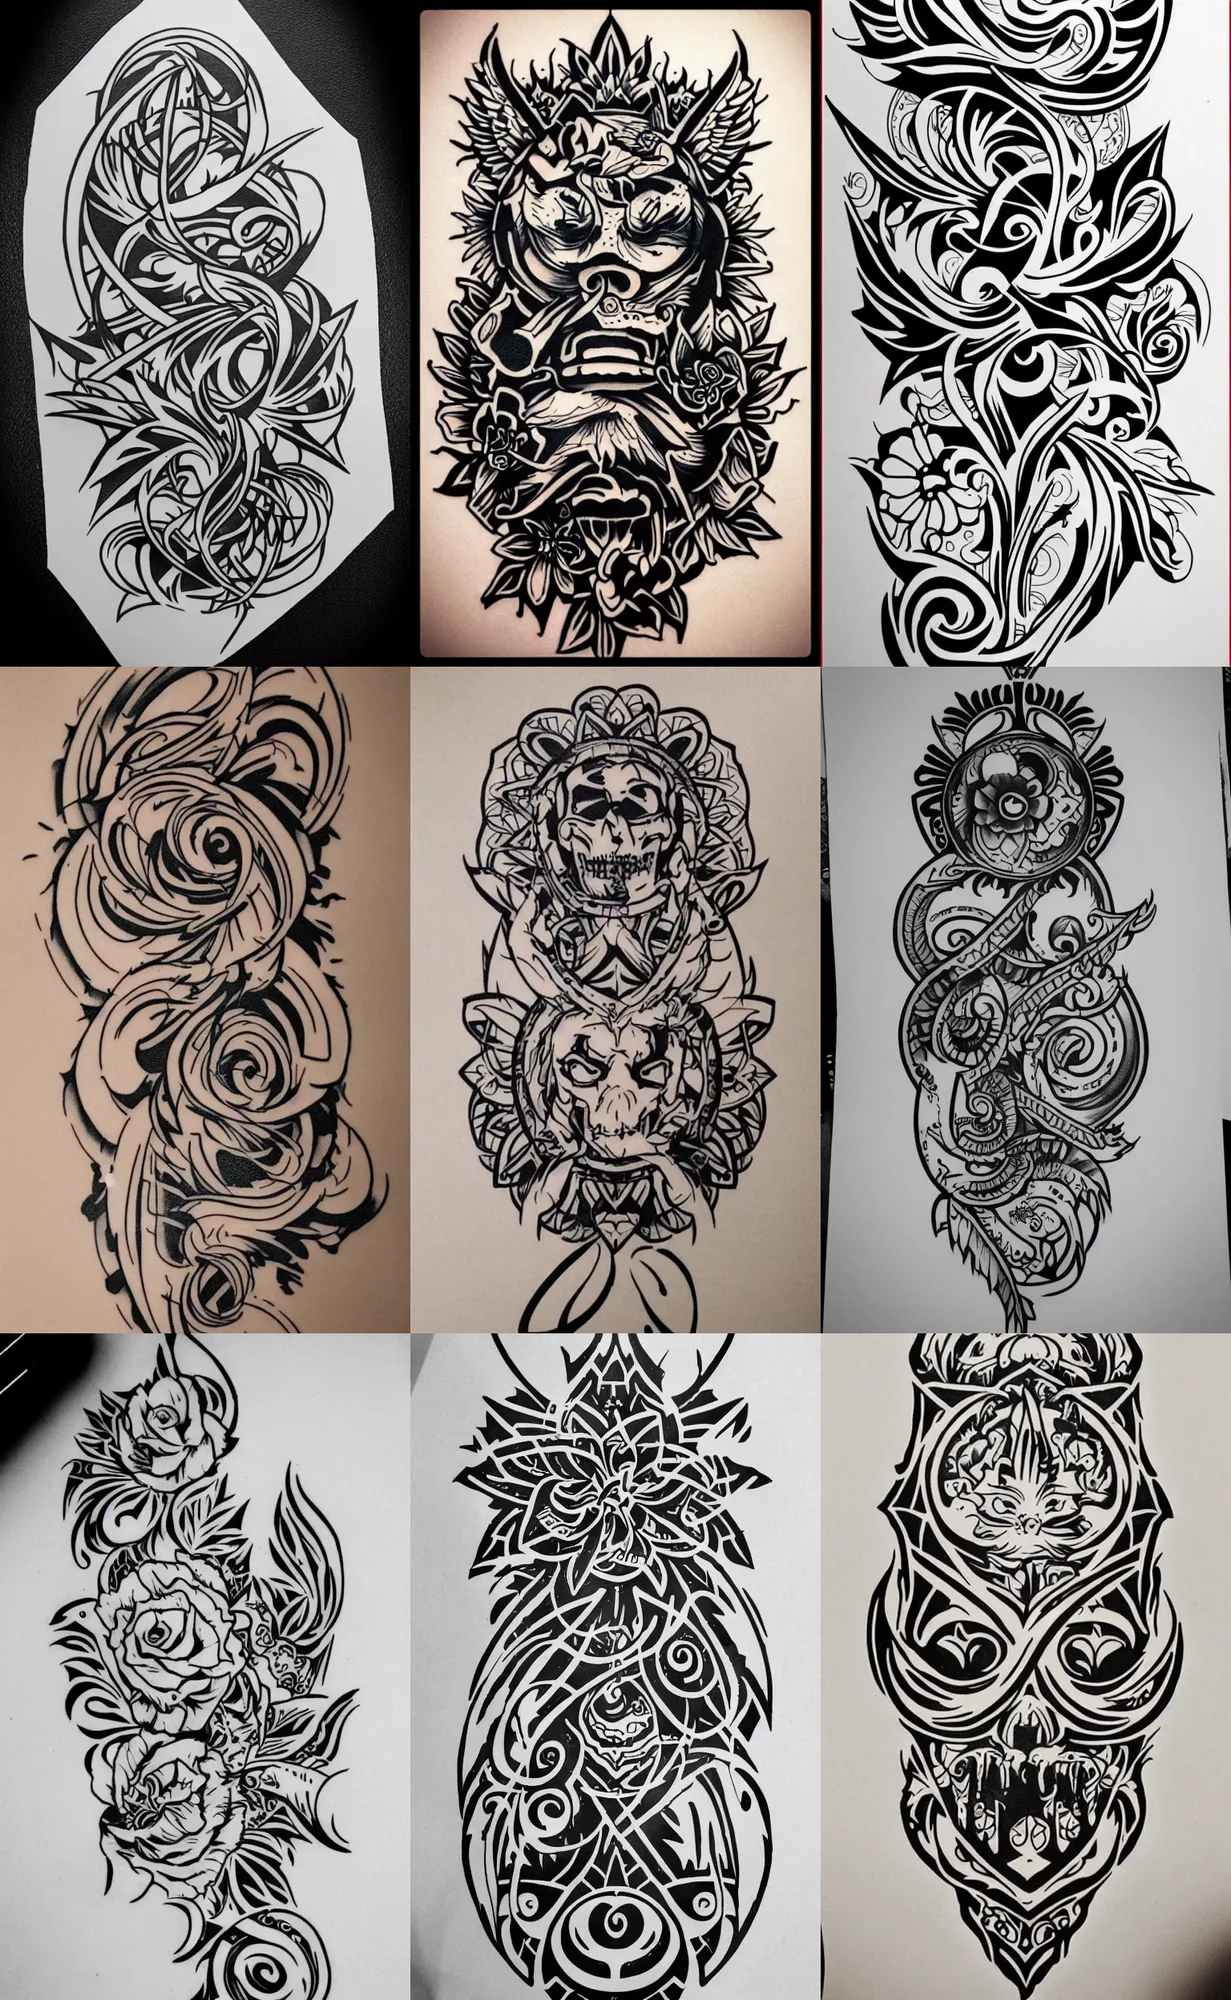 Fine Line Floral Tattoo Design | Upwork